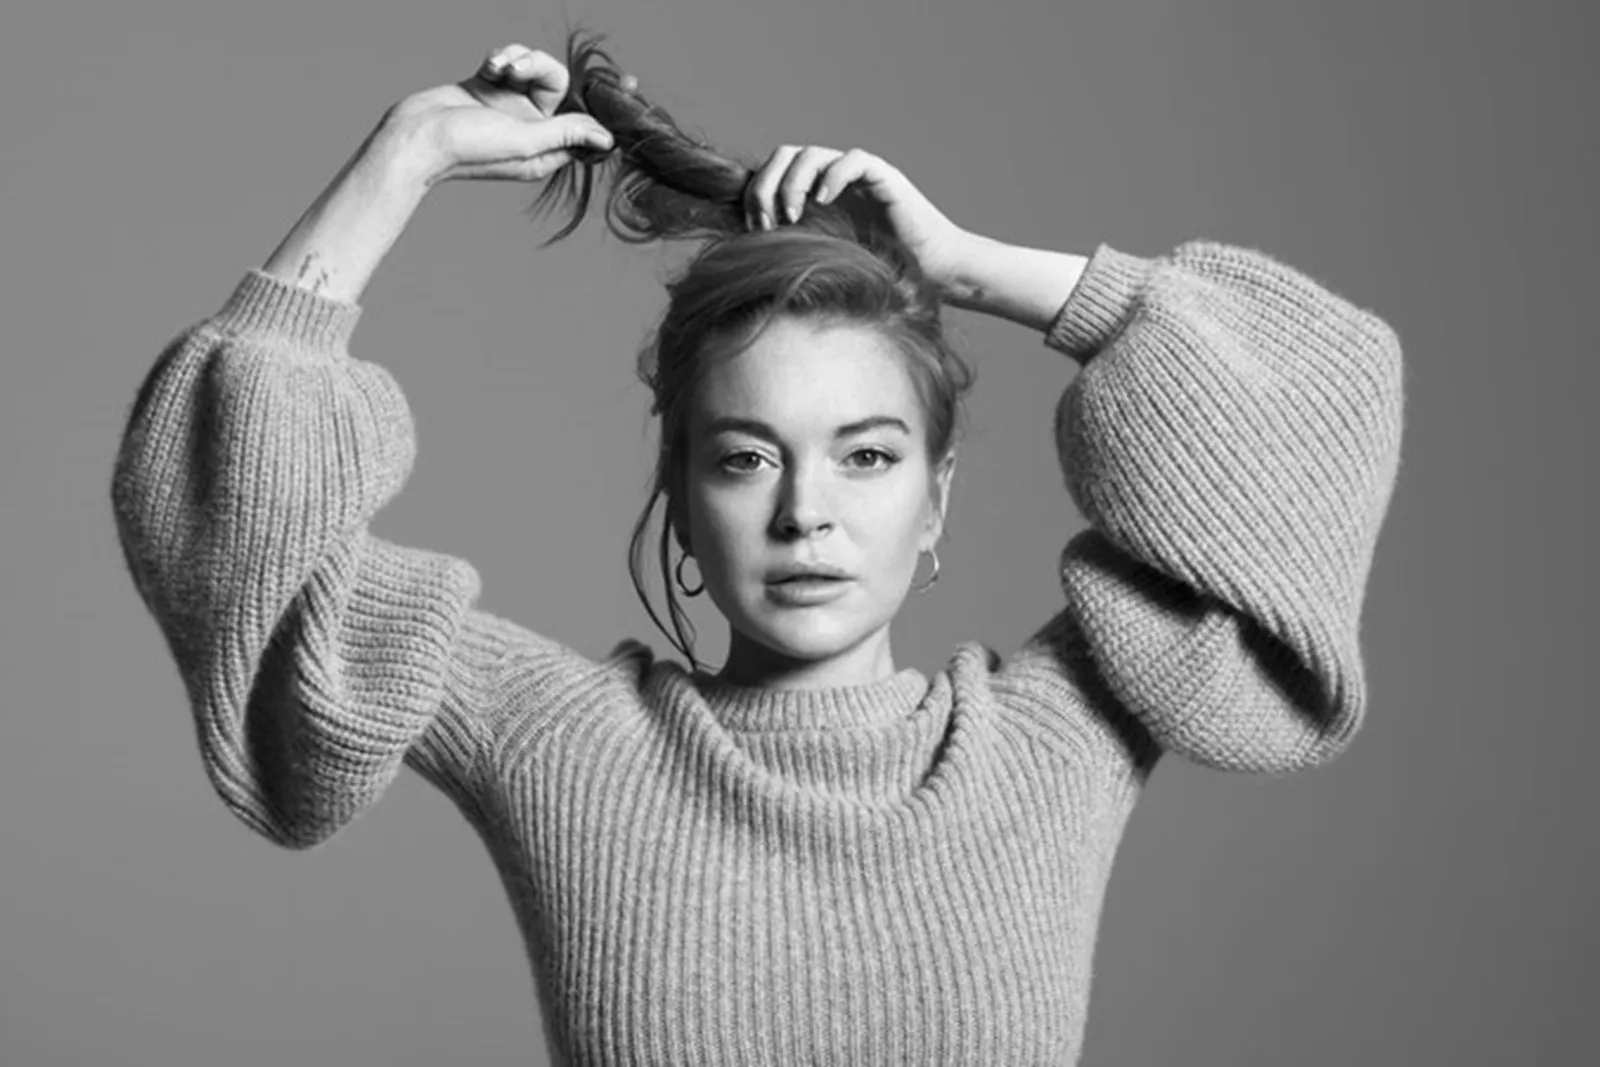 Sebut Korban Pelecehan Seksual Itu 'Lemah', Lindsay Lohan Minta Maaf